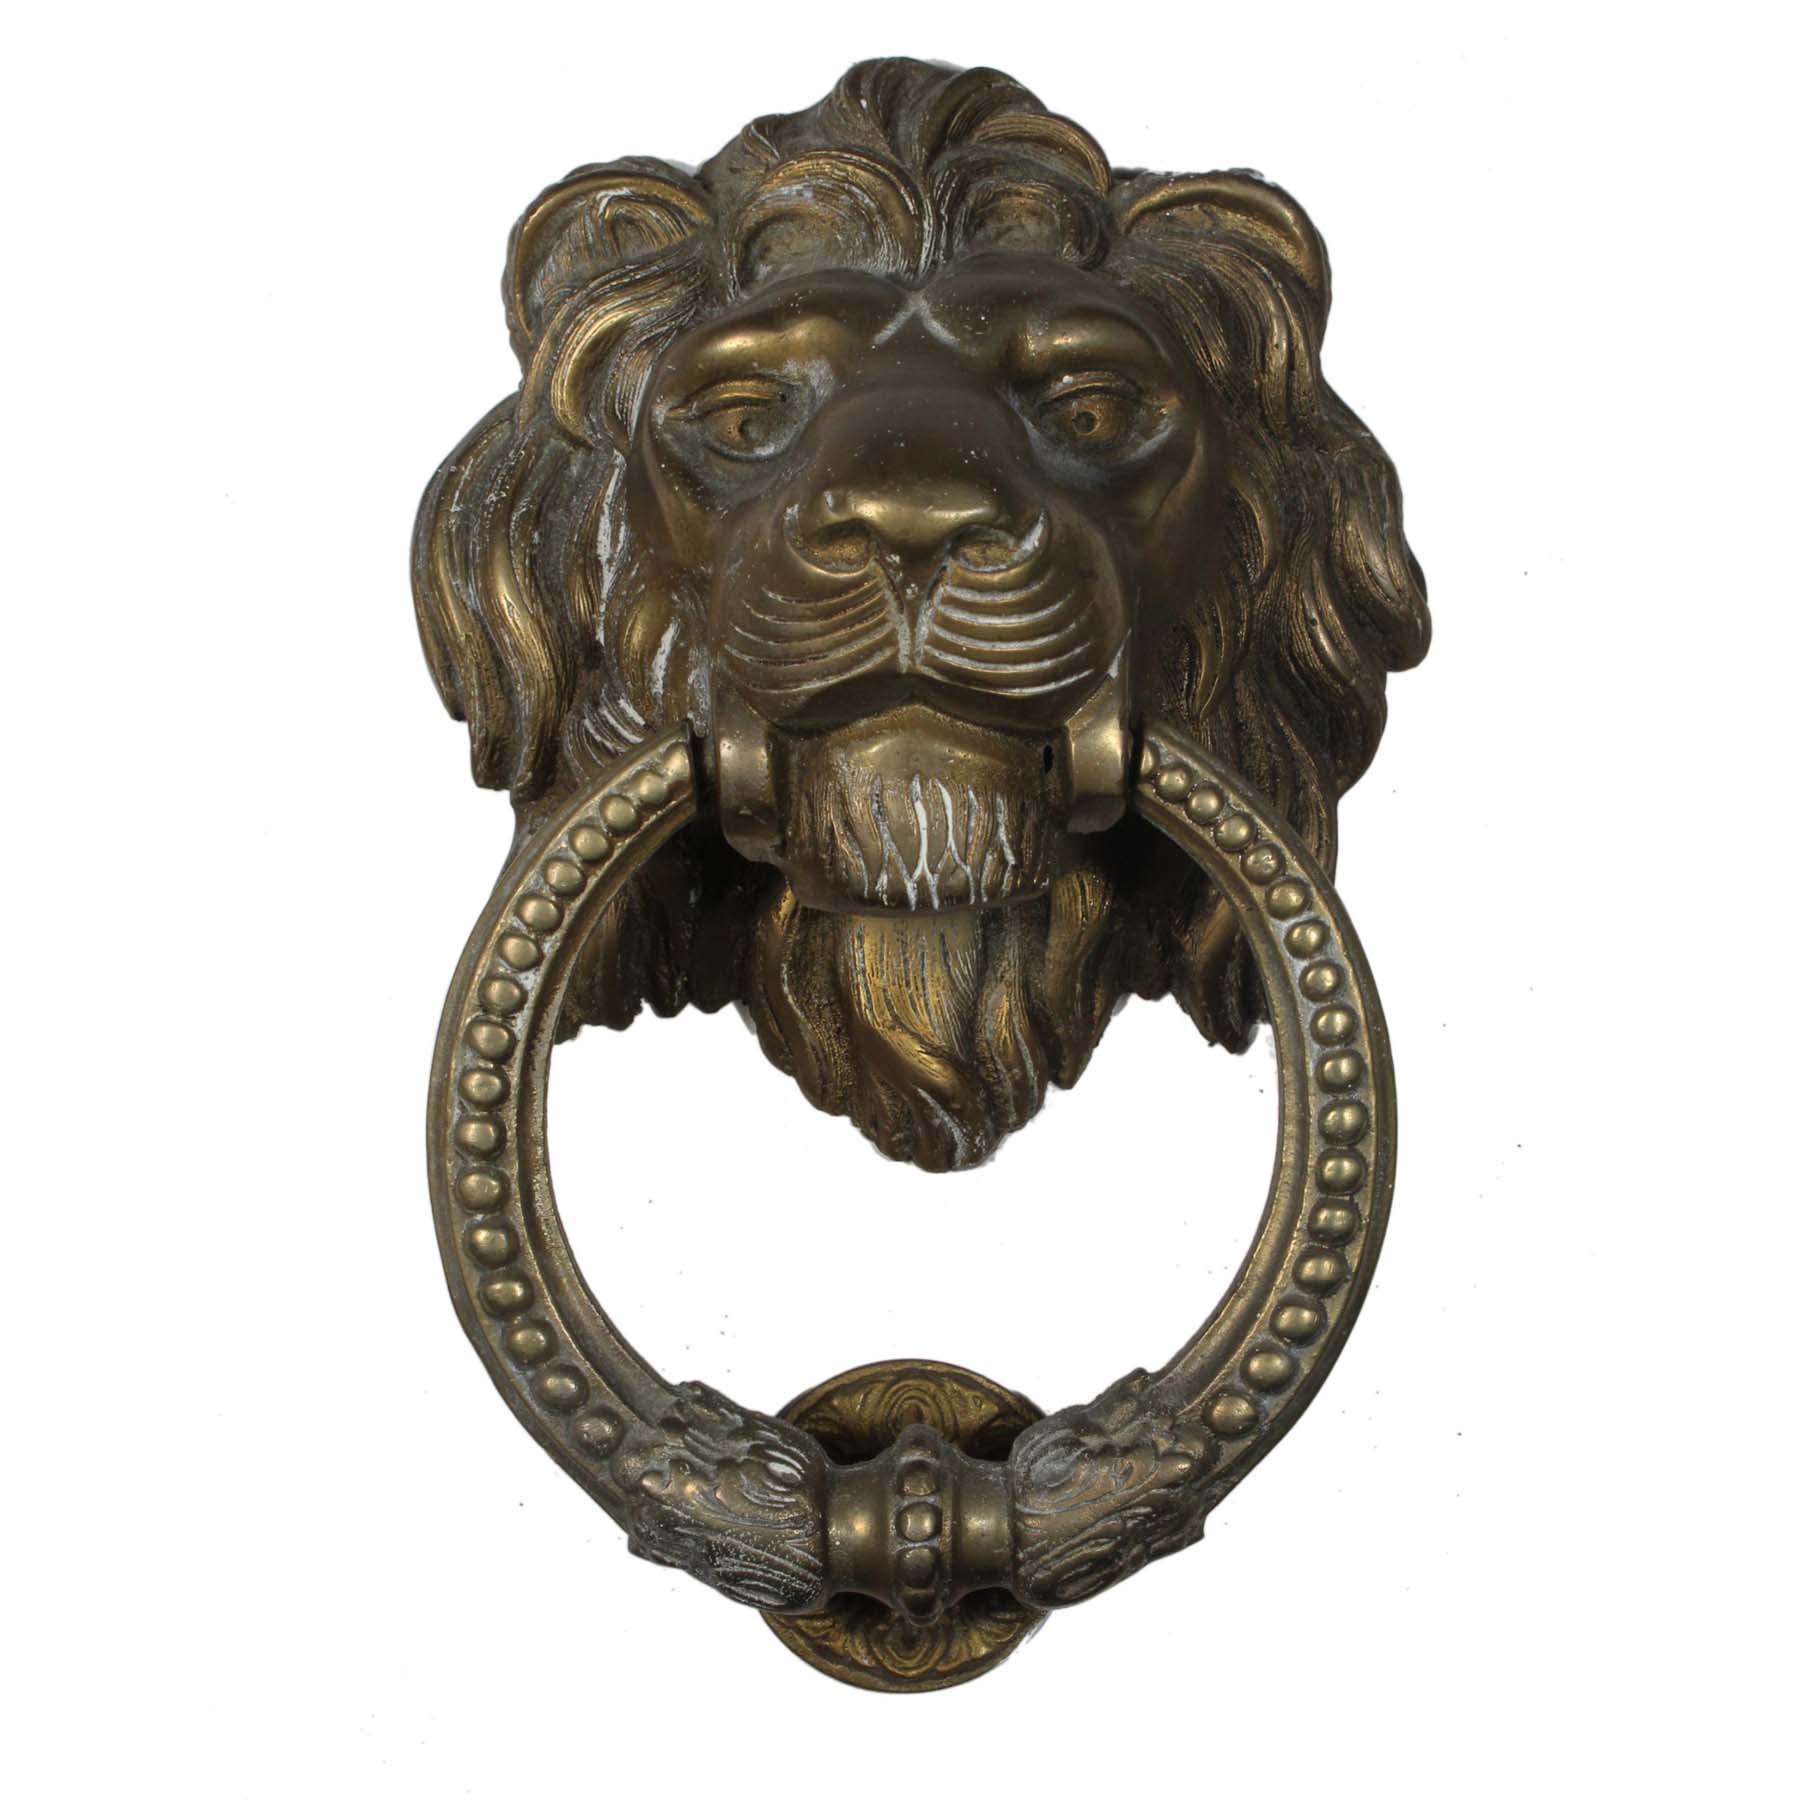 SOLD Substantial Antique Brass Lion Door Knocker, C. 1900 -0